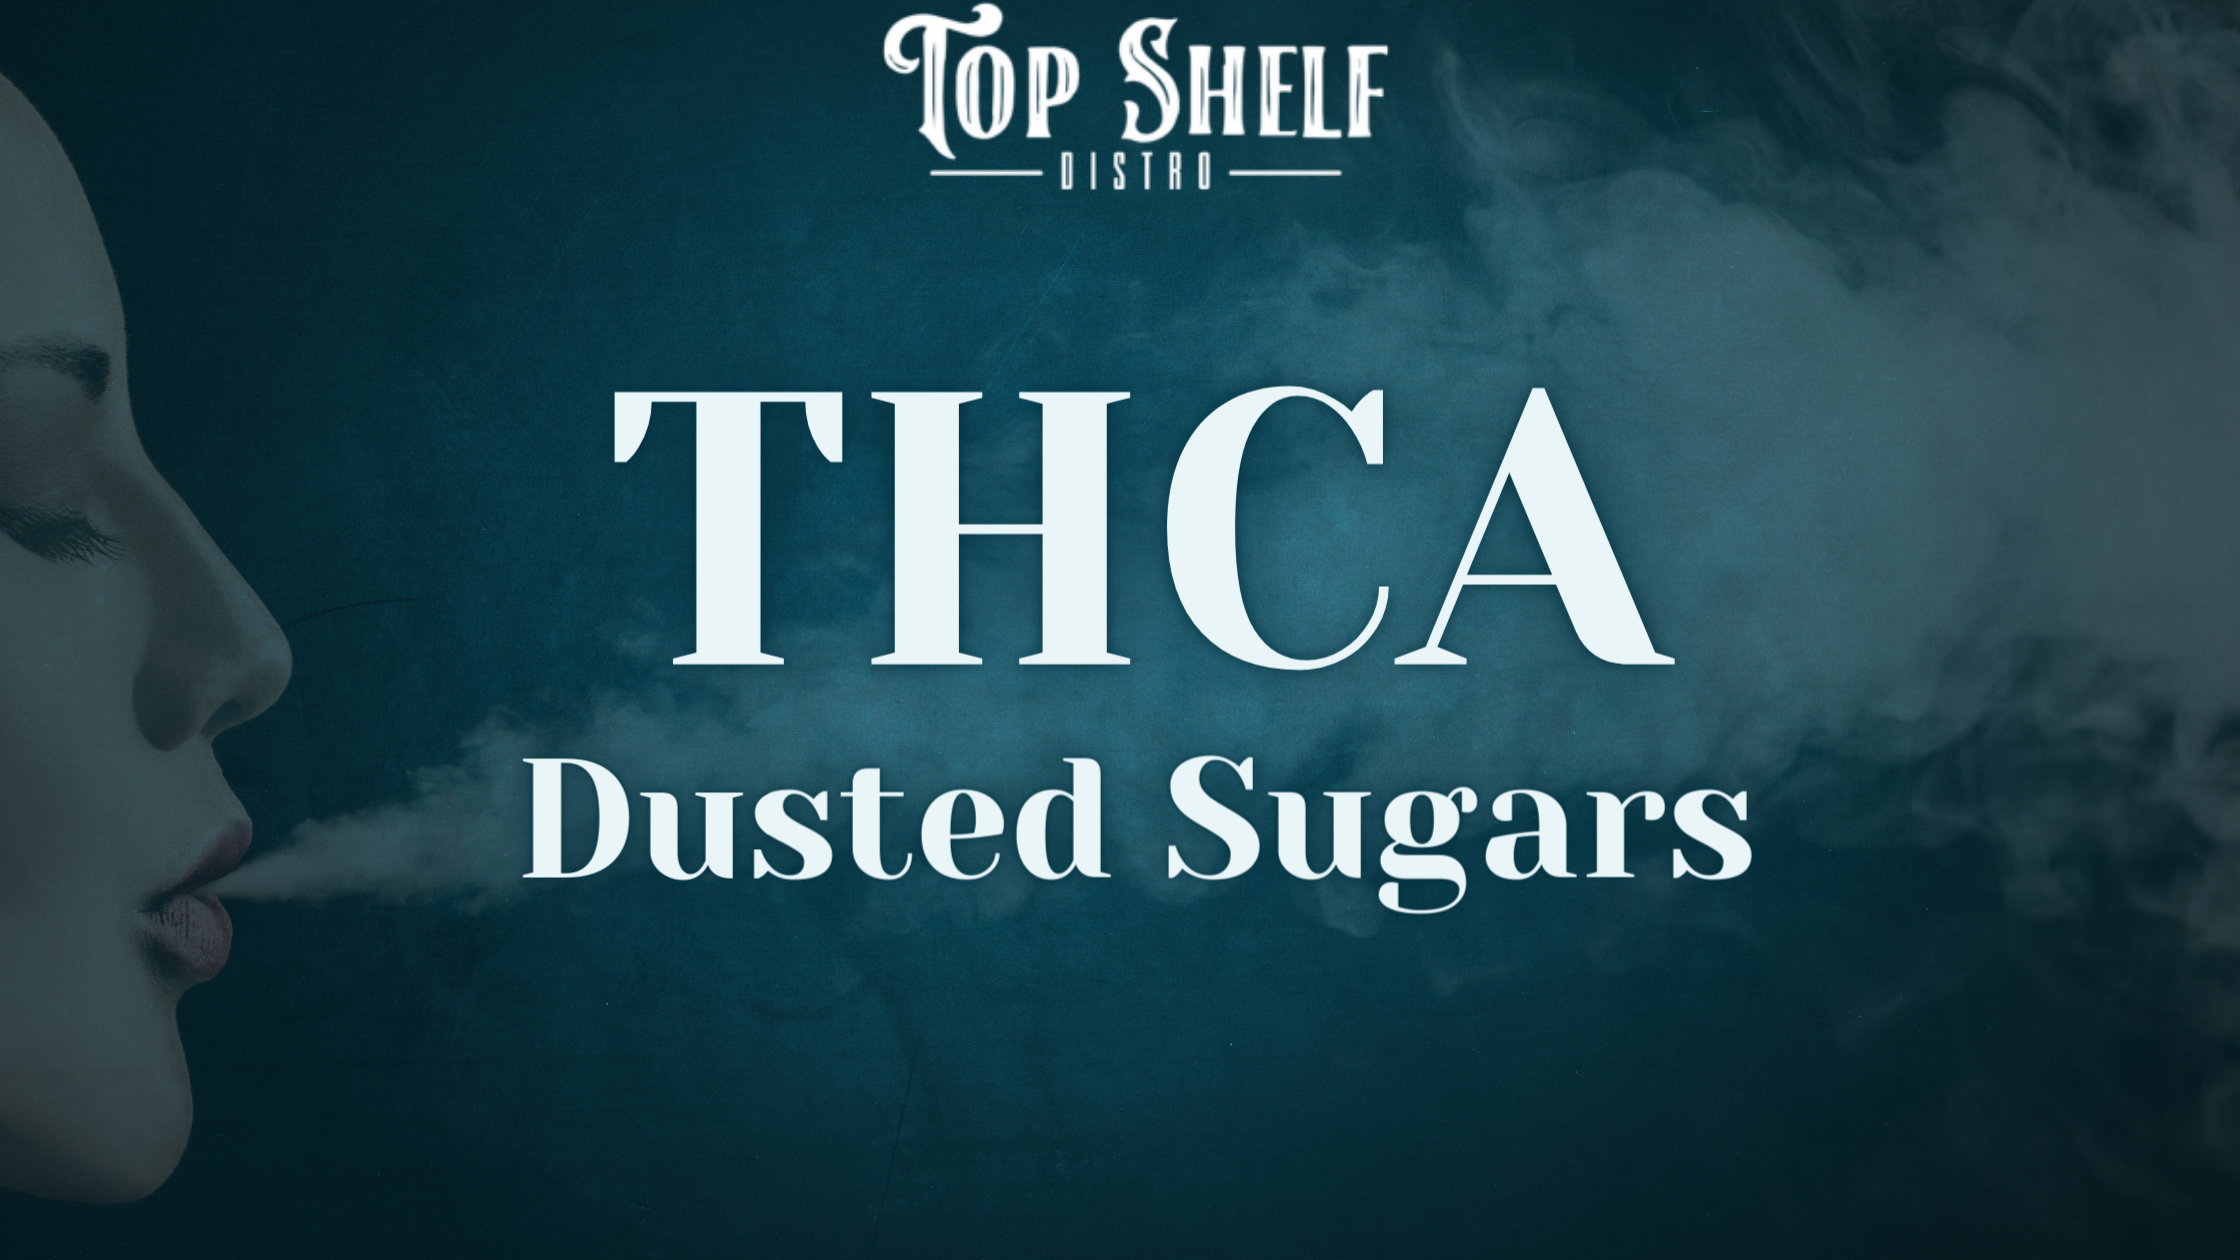 THCA Dusted Sugar